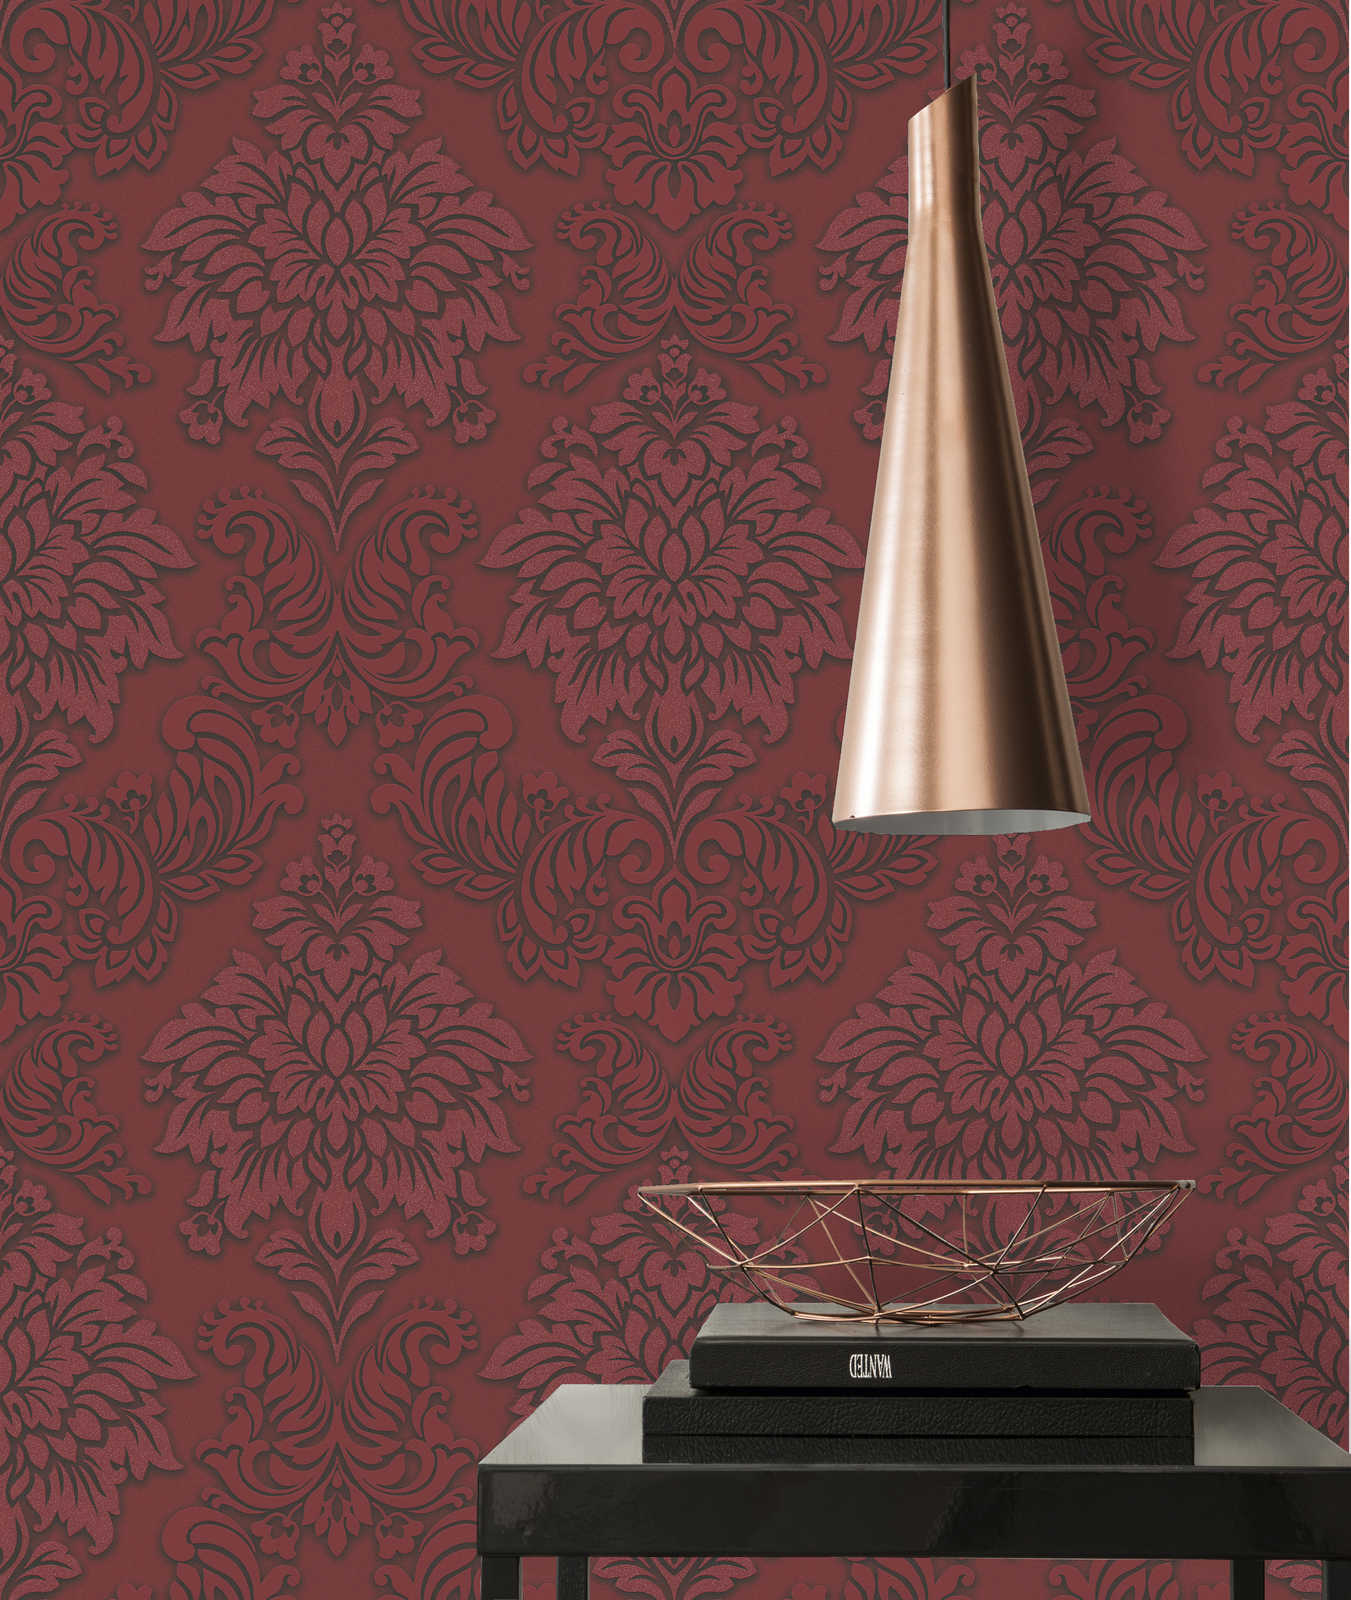             Barock Tapete Ornamente mit Glitzereffekt – Rot, Silber, Schwarz
        